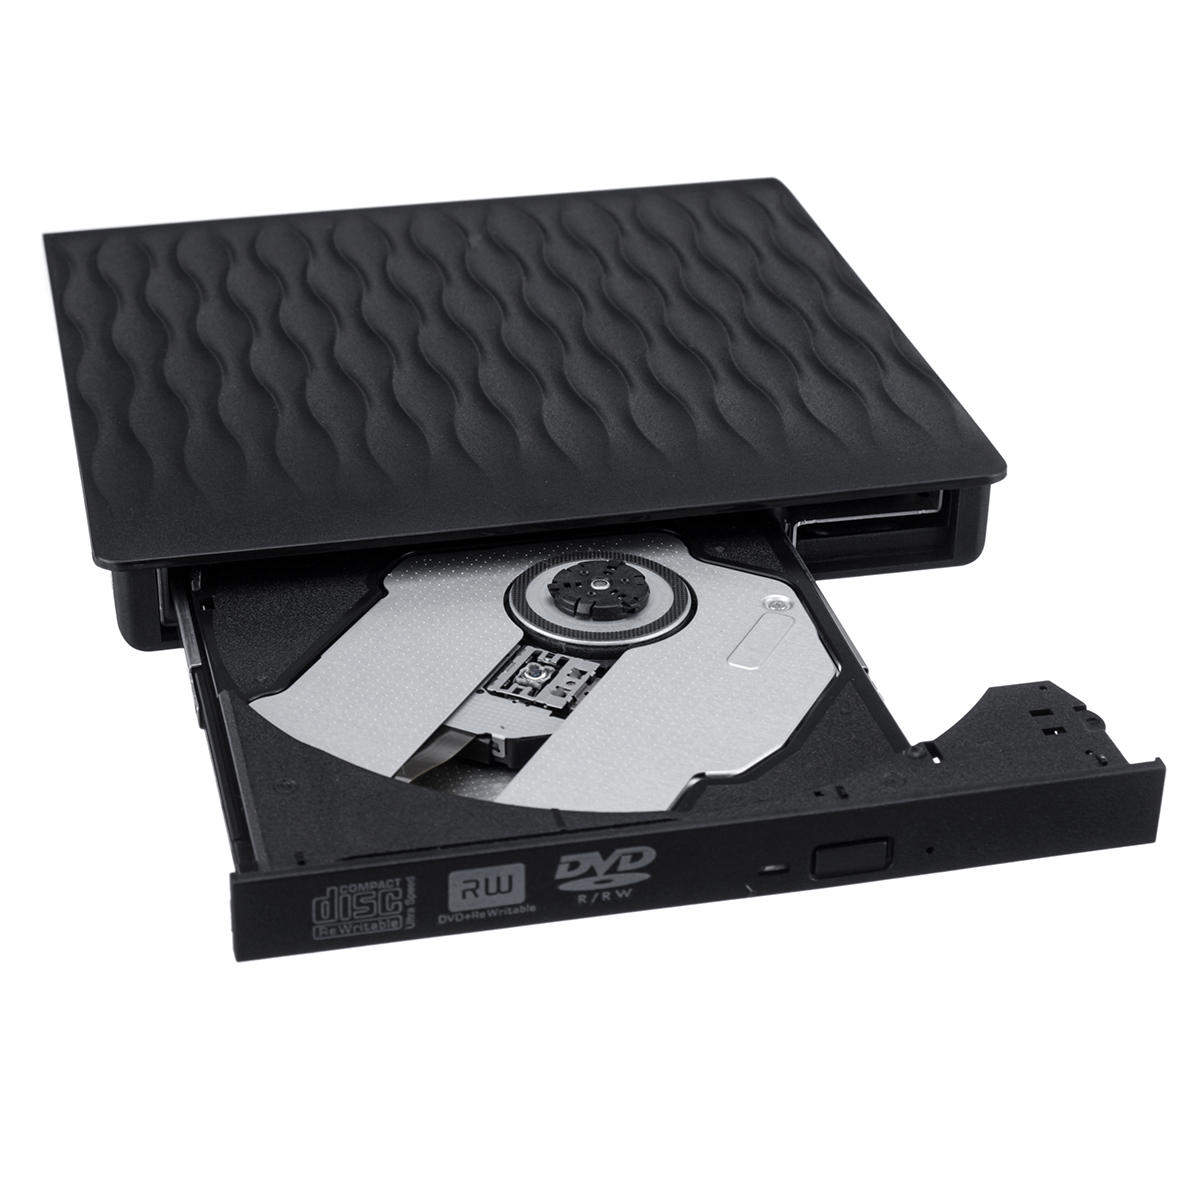 外付けUSB3.0 DVD CD-RWドライブRW CDバーナーラップトップデスクトップPC用光学ドライブリーダープレーヤー